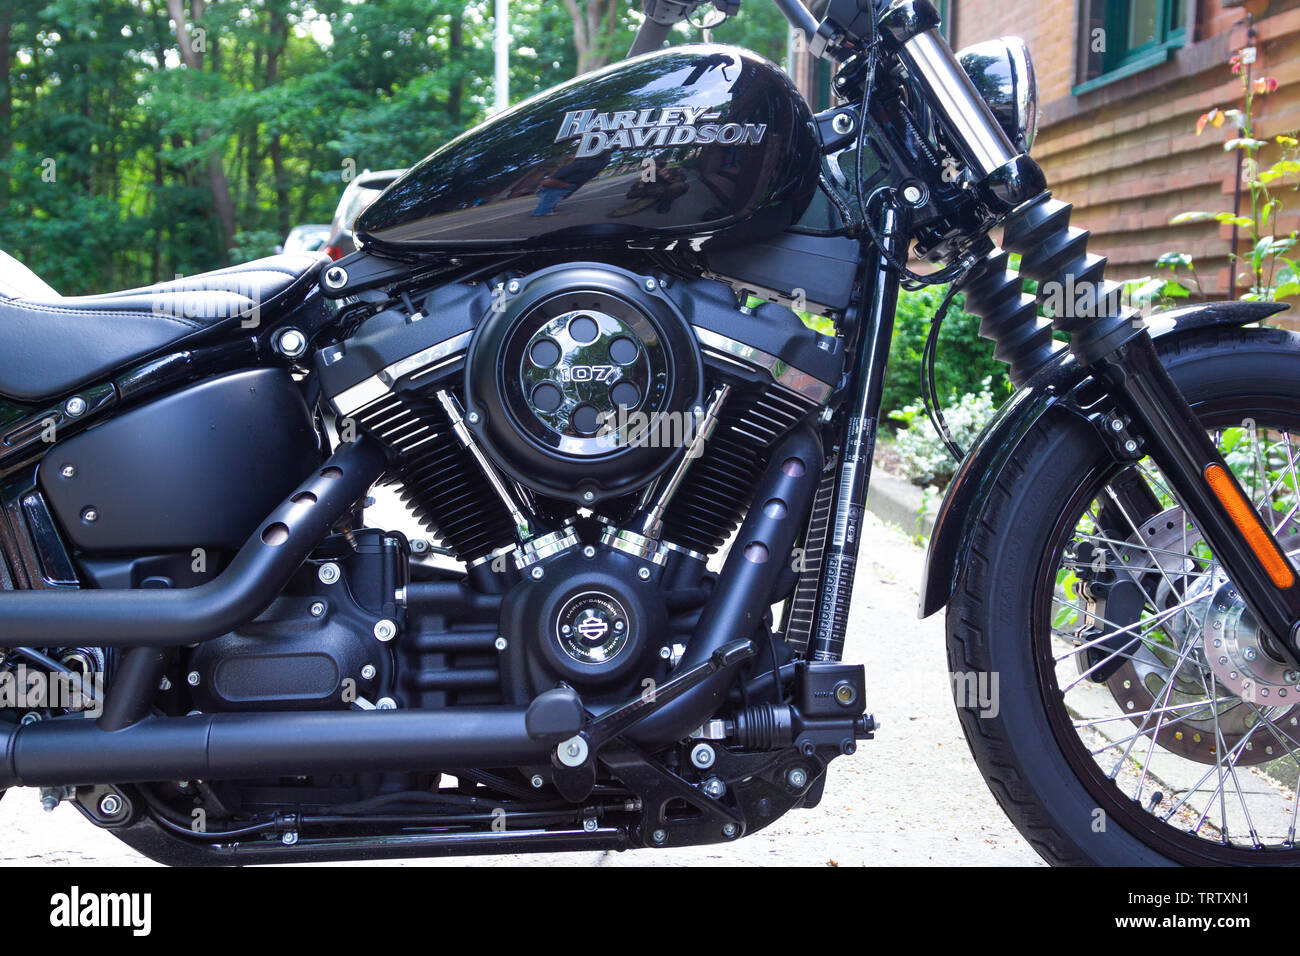 WUNSTORF/Deutschland - Juni 7,2019: Harley Davidson Motorrad steht auf einer Straße. Harley Davidson ist eine US-amerikanische Motorradhersteller in 19 gegründet. Stockfoto